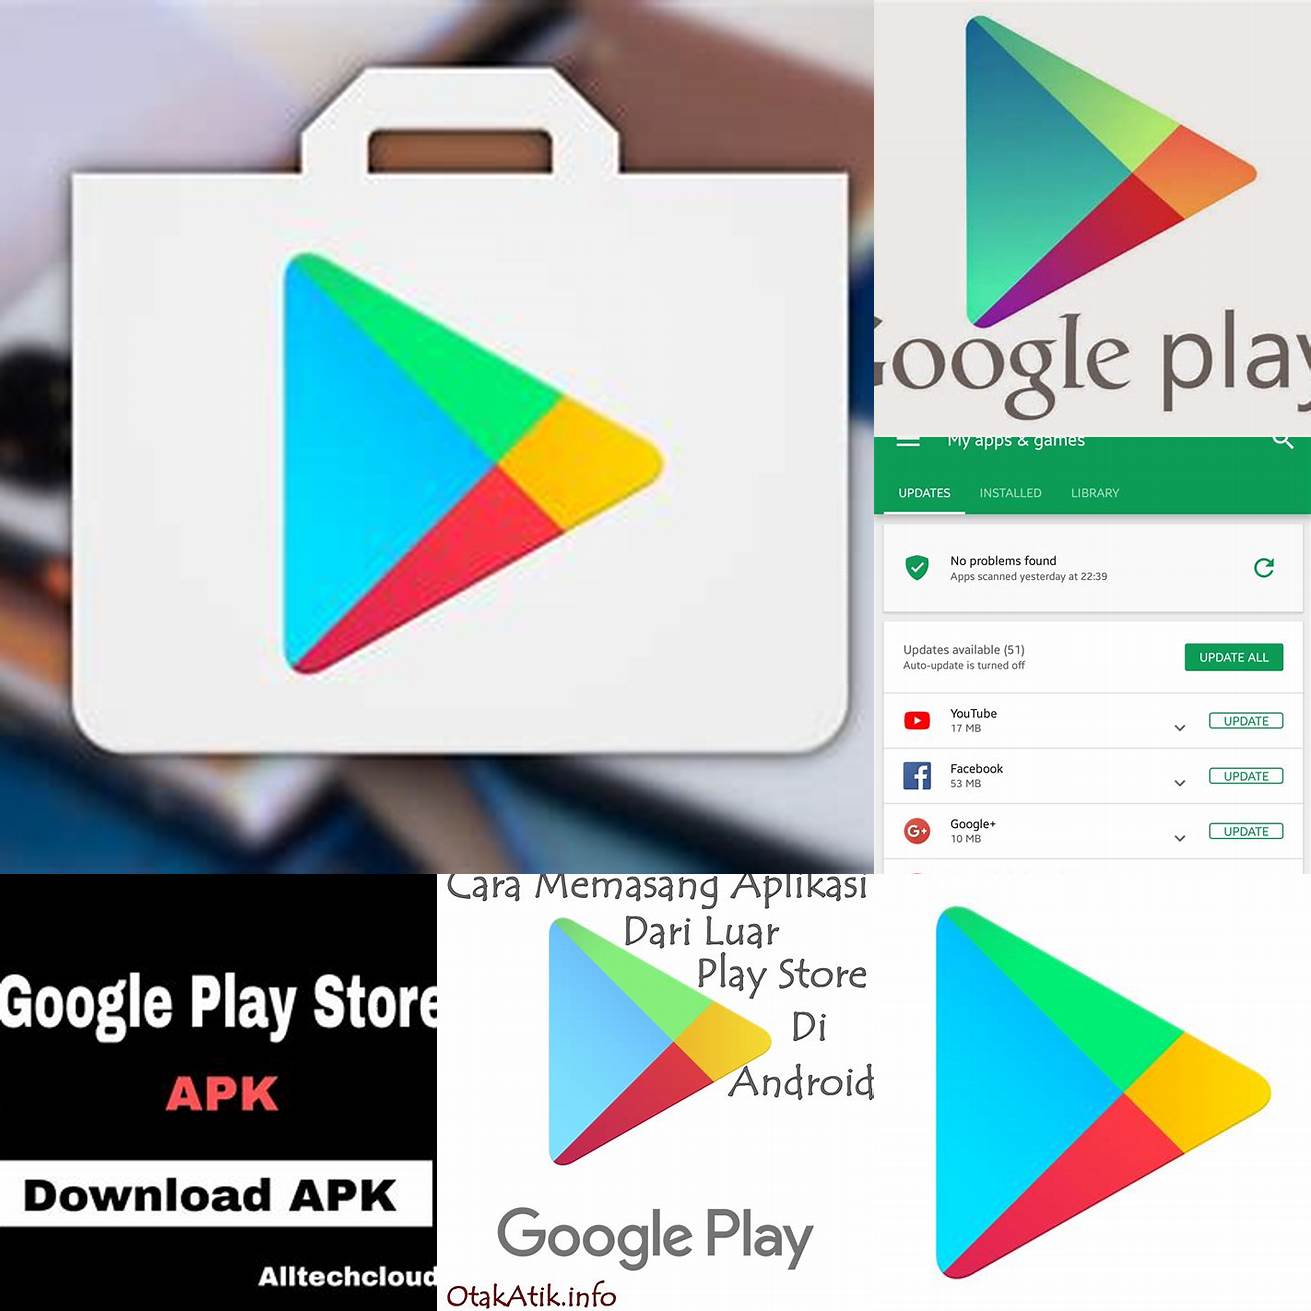 1 Buka aplikasi Google Play Store di perangkat Android Anda